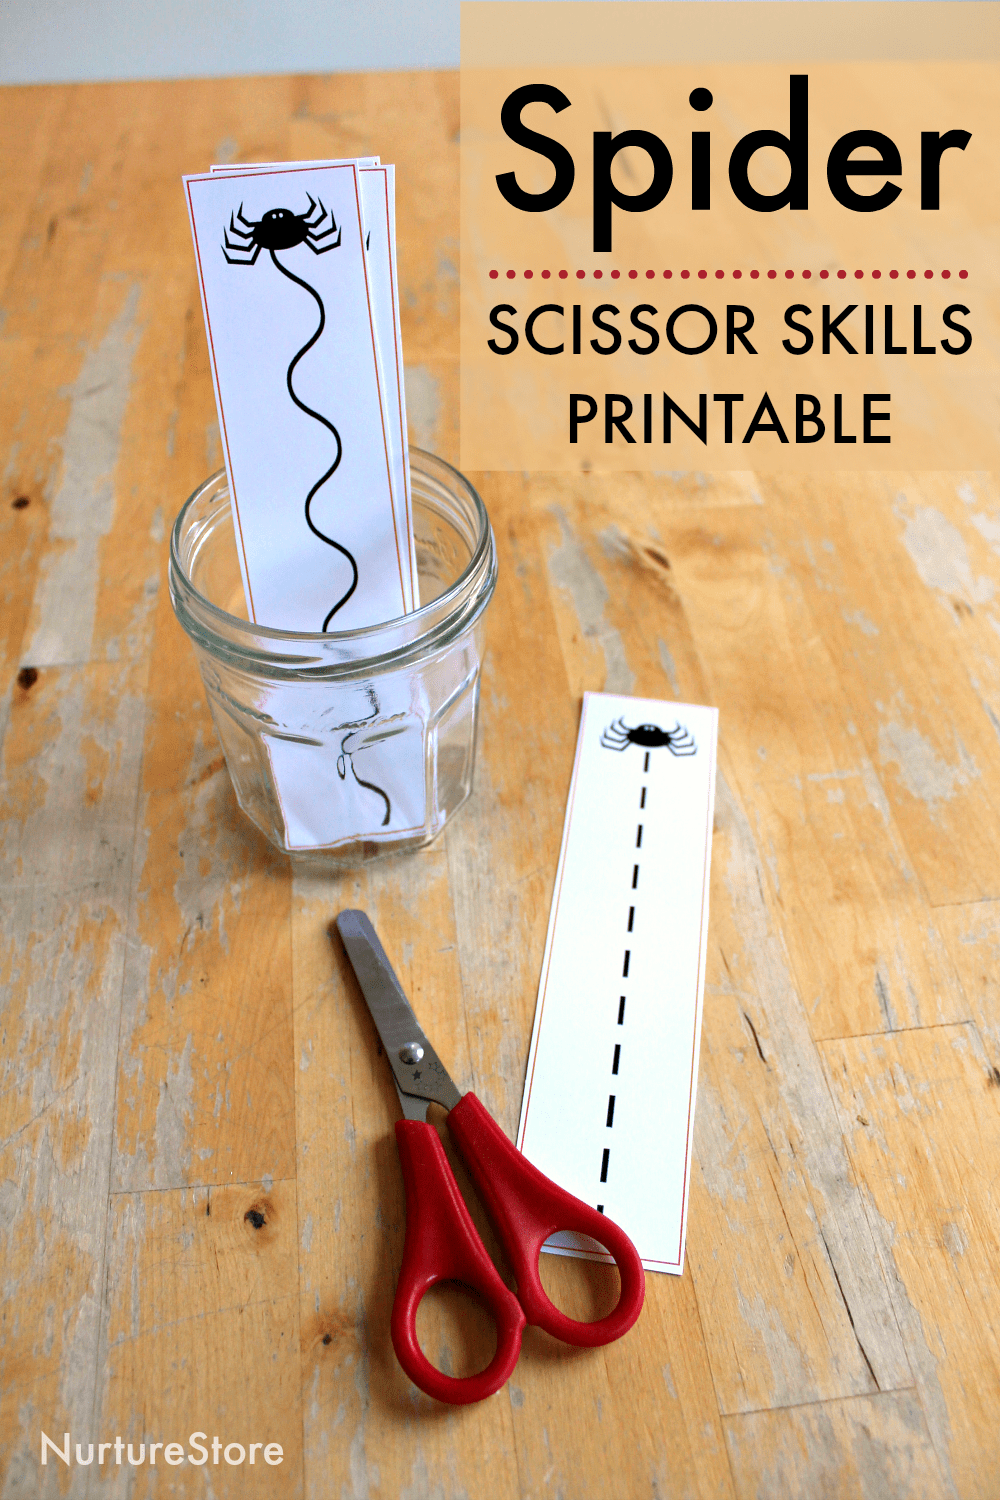 Spider scissor skills printable cutting sheets - NurtureStore